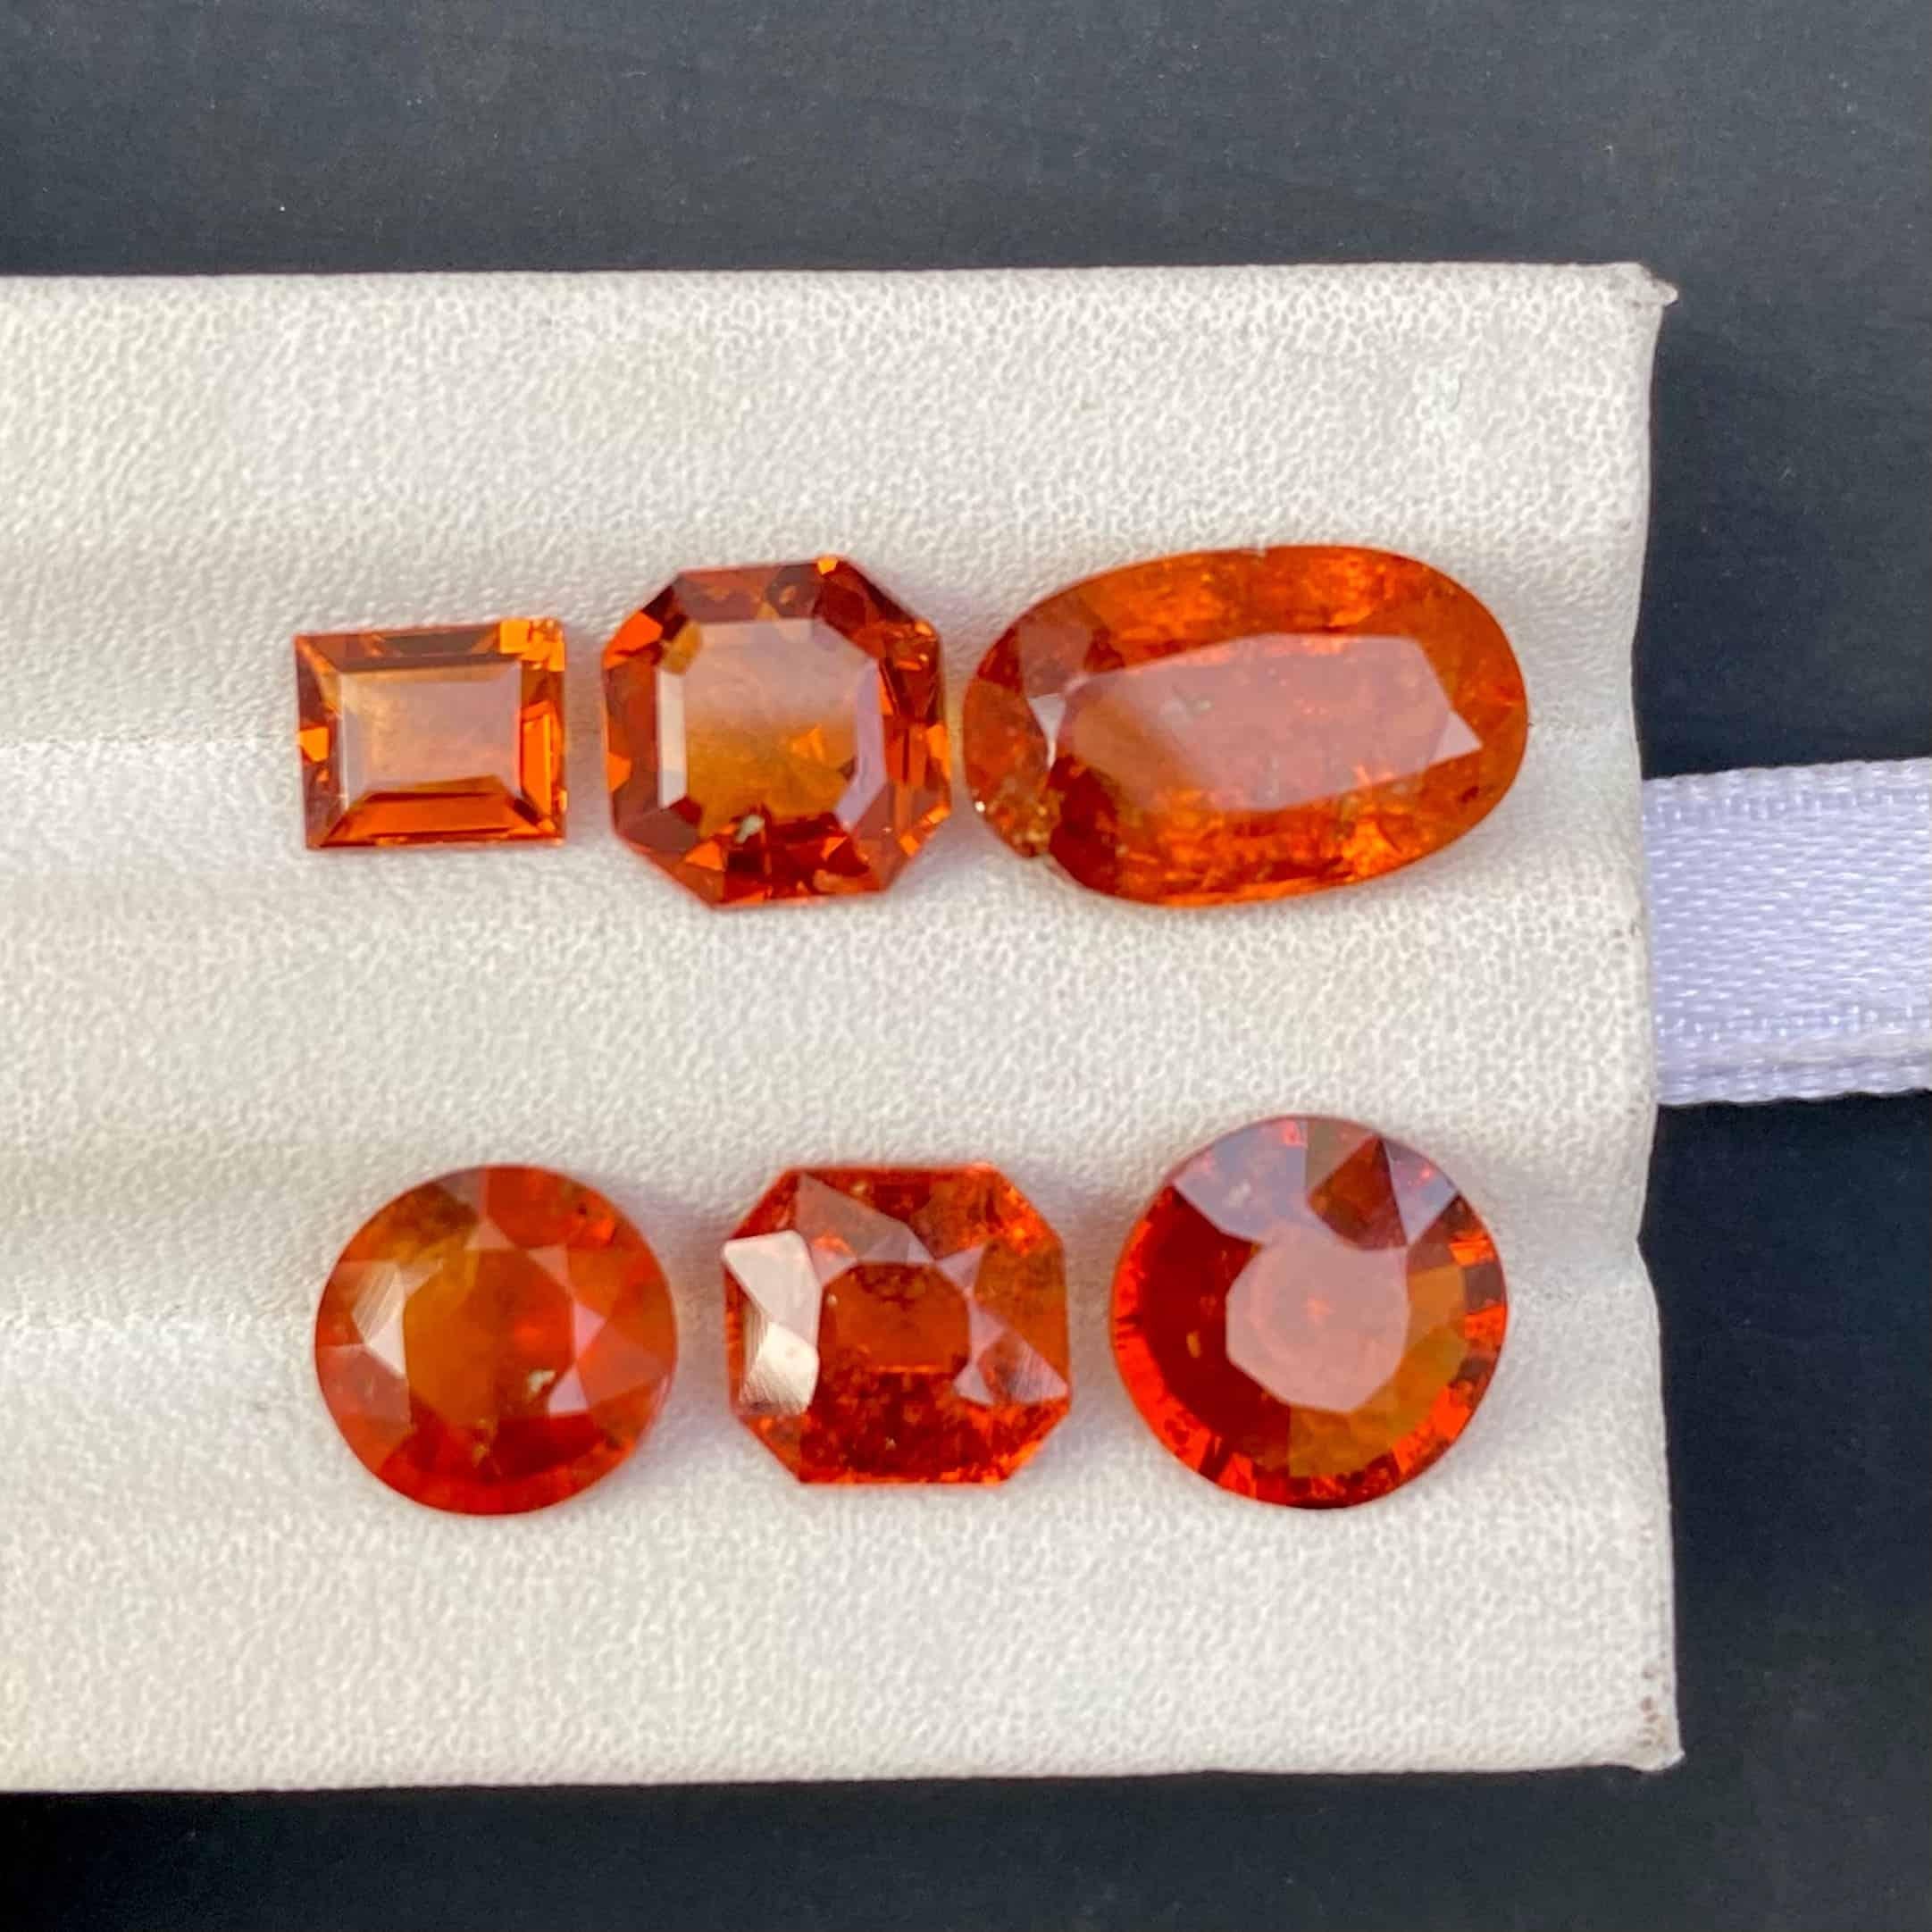 Modern Natural Spessartite Orange Garnet Stones Lot Loose Gemstone From Africa For Sale